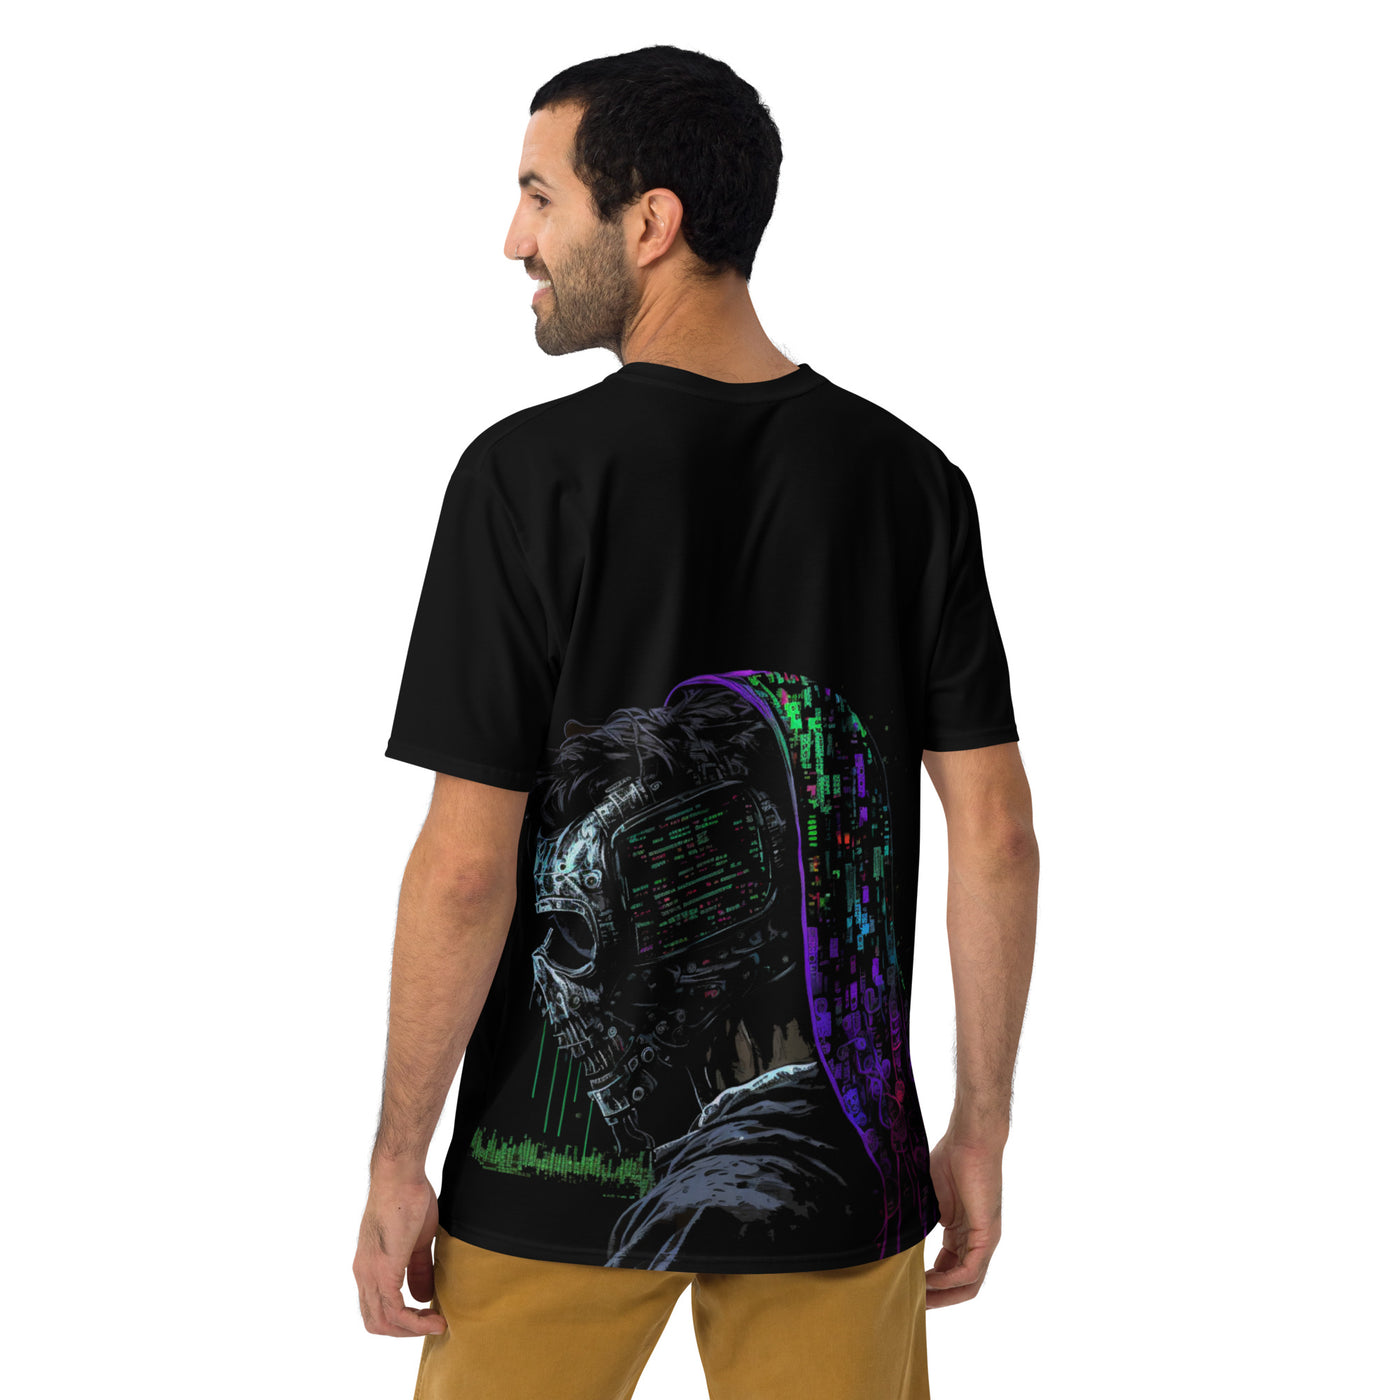 Cyberware assassin v57 - Men's t-shirt